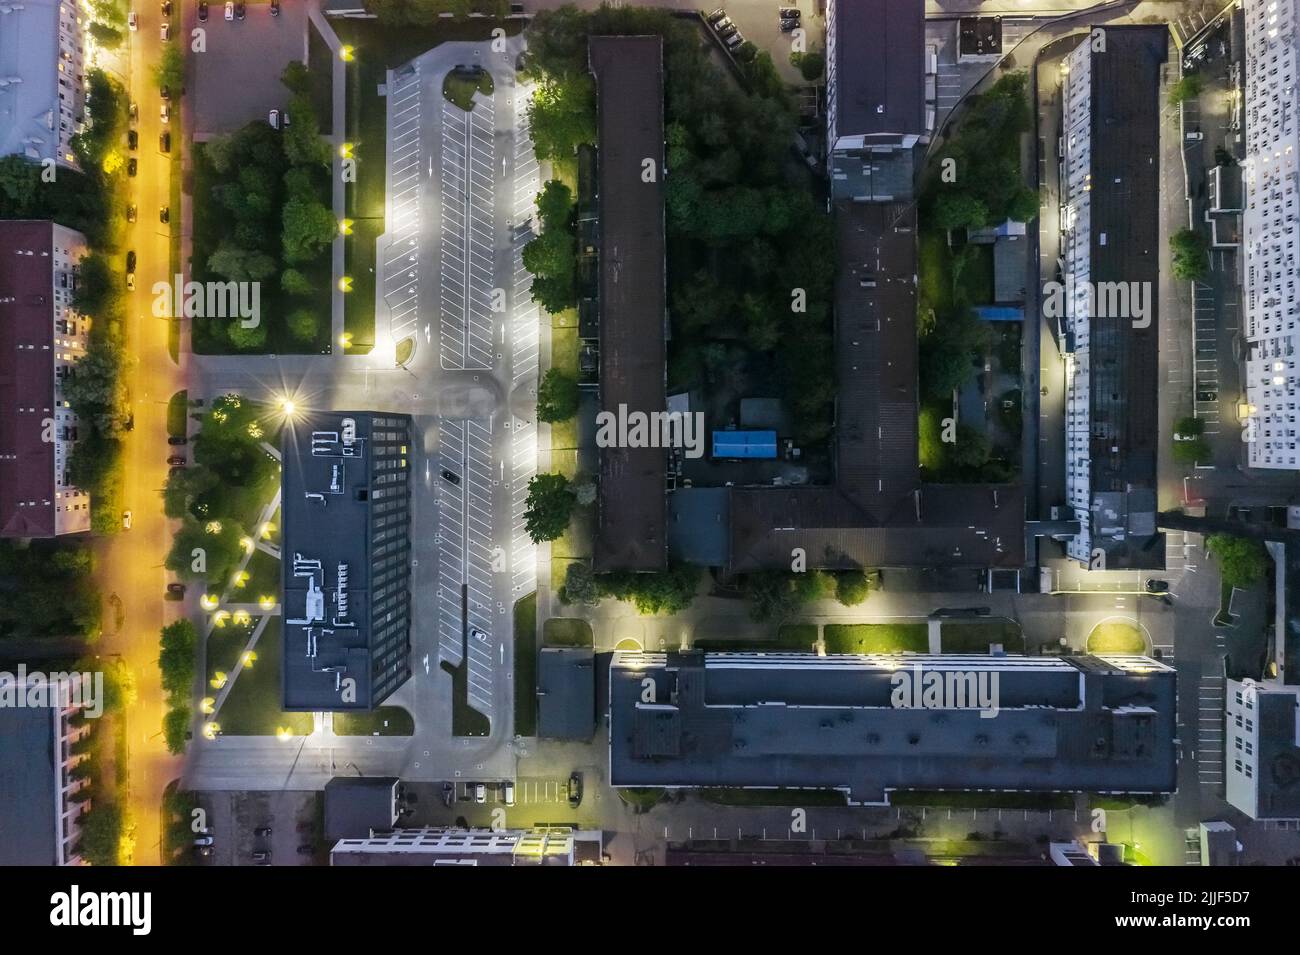 vista aérea de la zona industrial por la noche con edificios iluminados y aparcamiento vacío Foto de stock